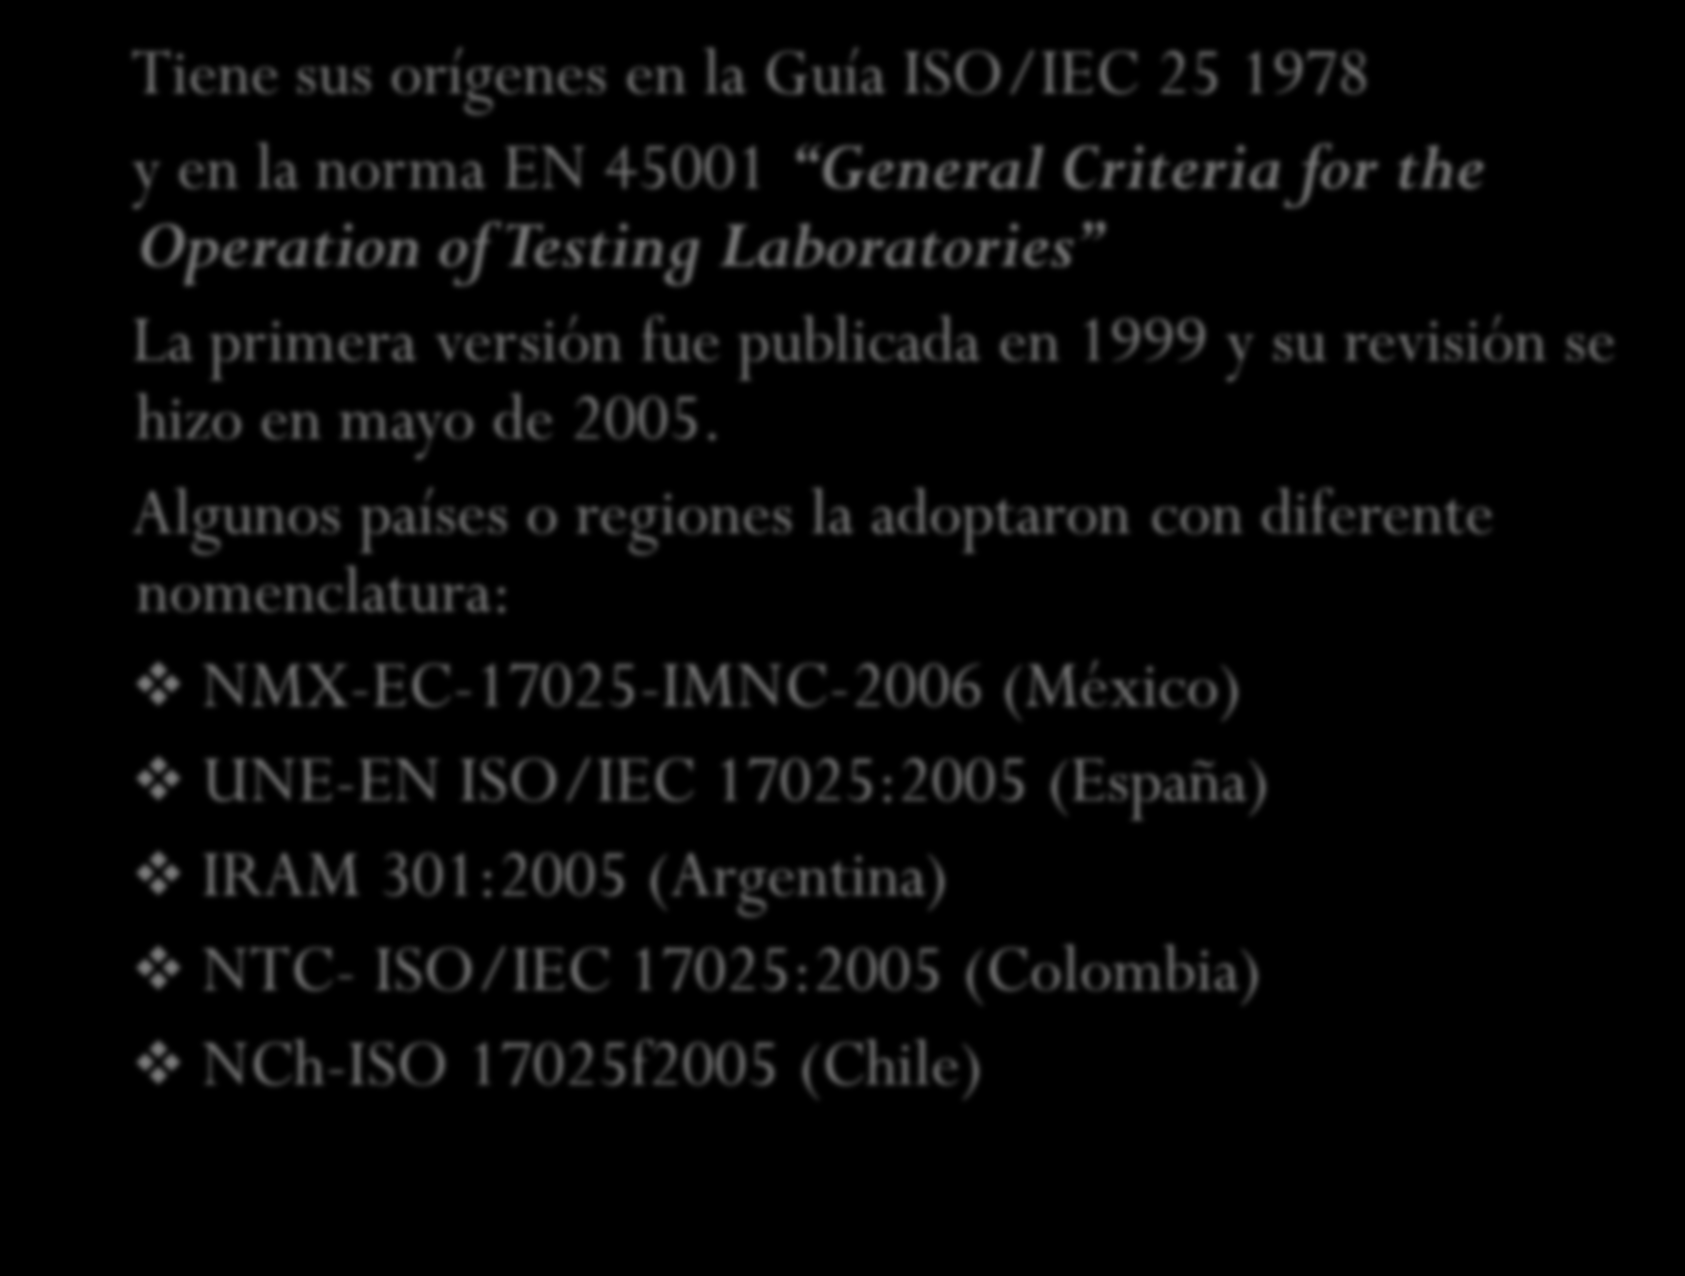 RESEÑA HISTÓRICA Tiene sus orígenes en la Guía ISO/IEC 25 1978 y en la norma EN 45001 General Criteria for the Operation of Testing Laboratories La primera versión fue publicada en 1999 y su revisión